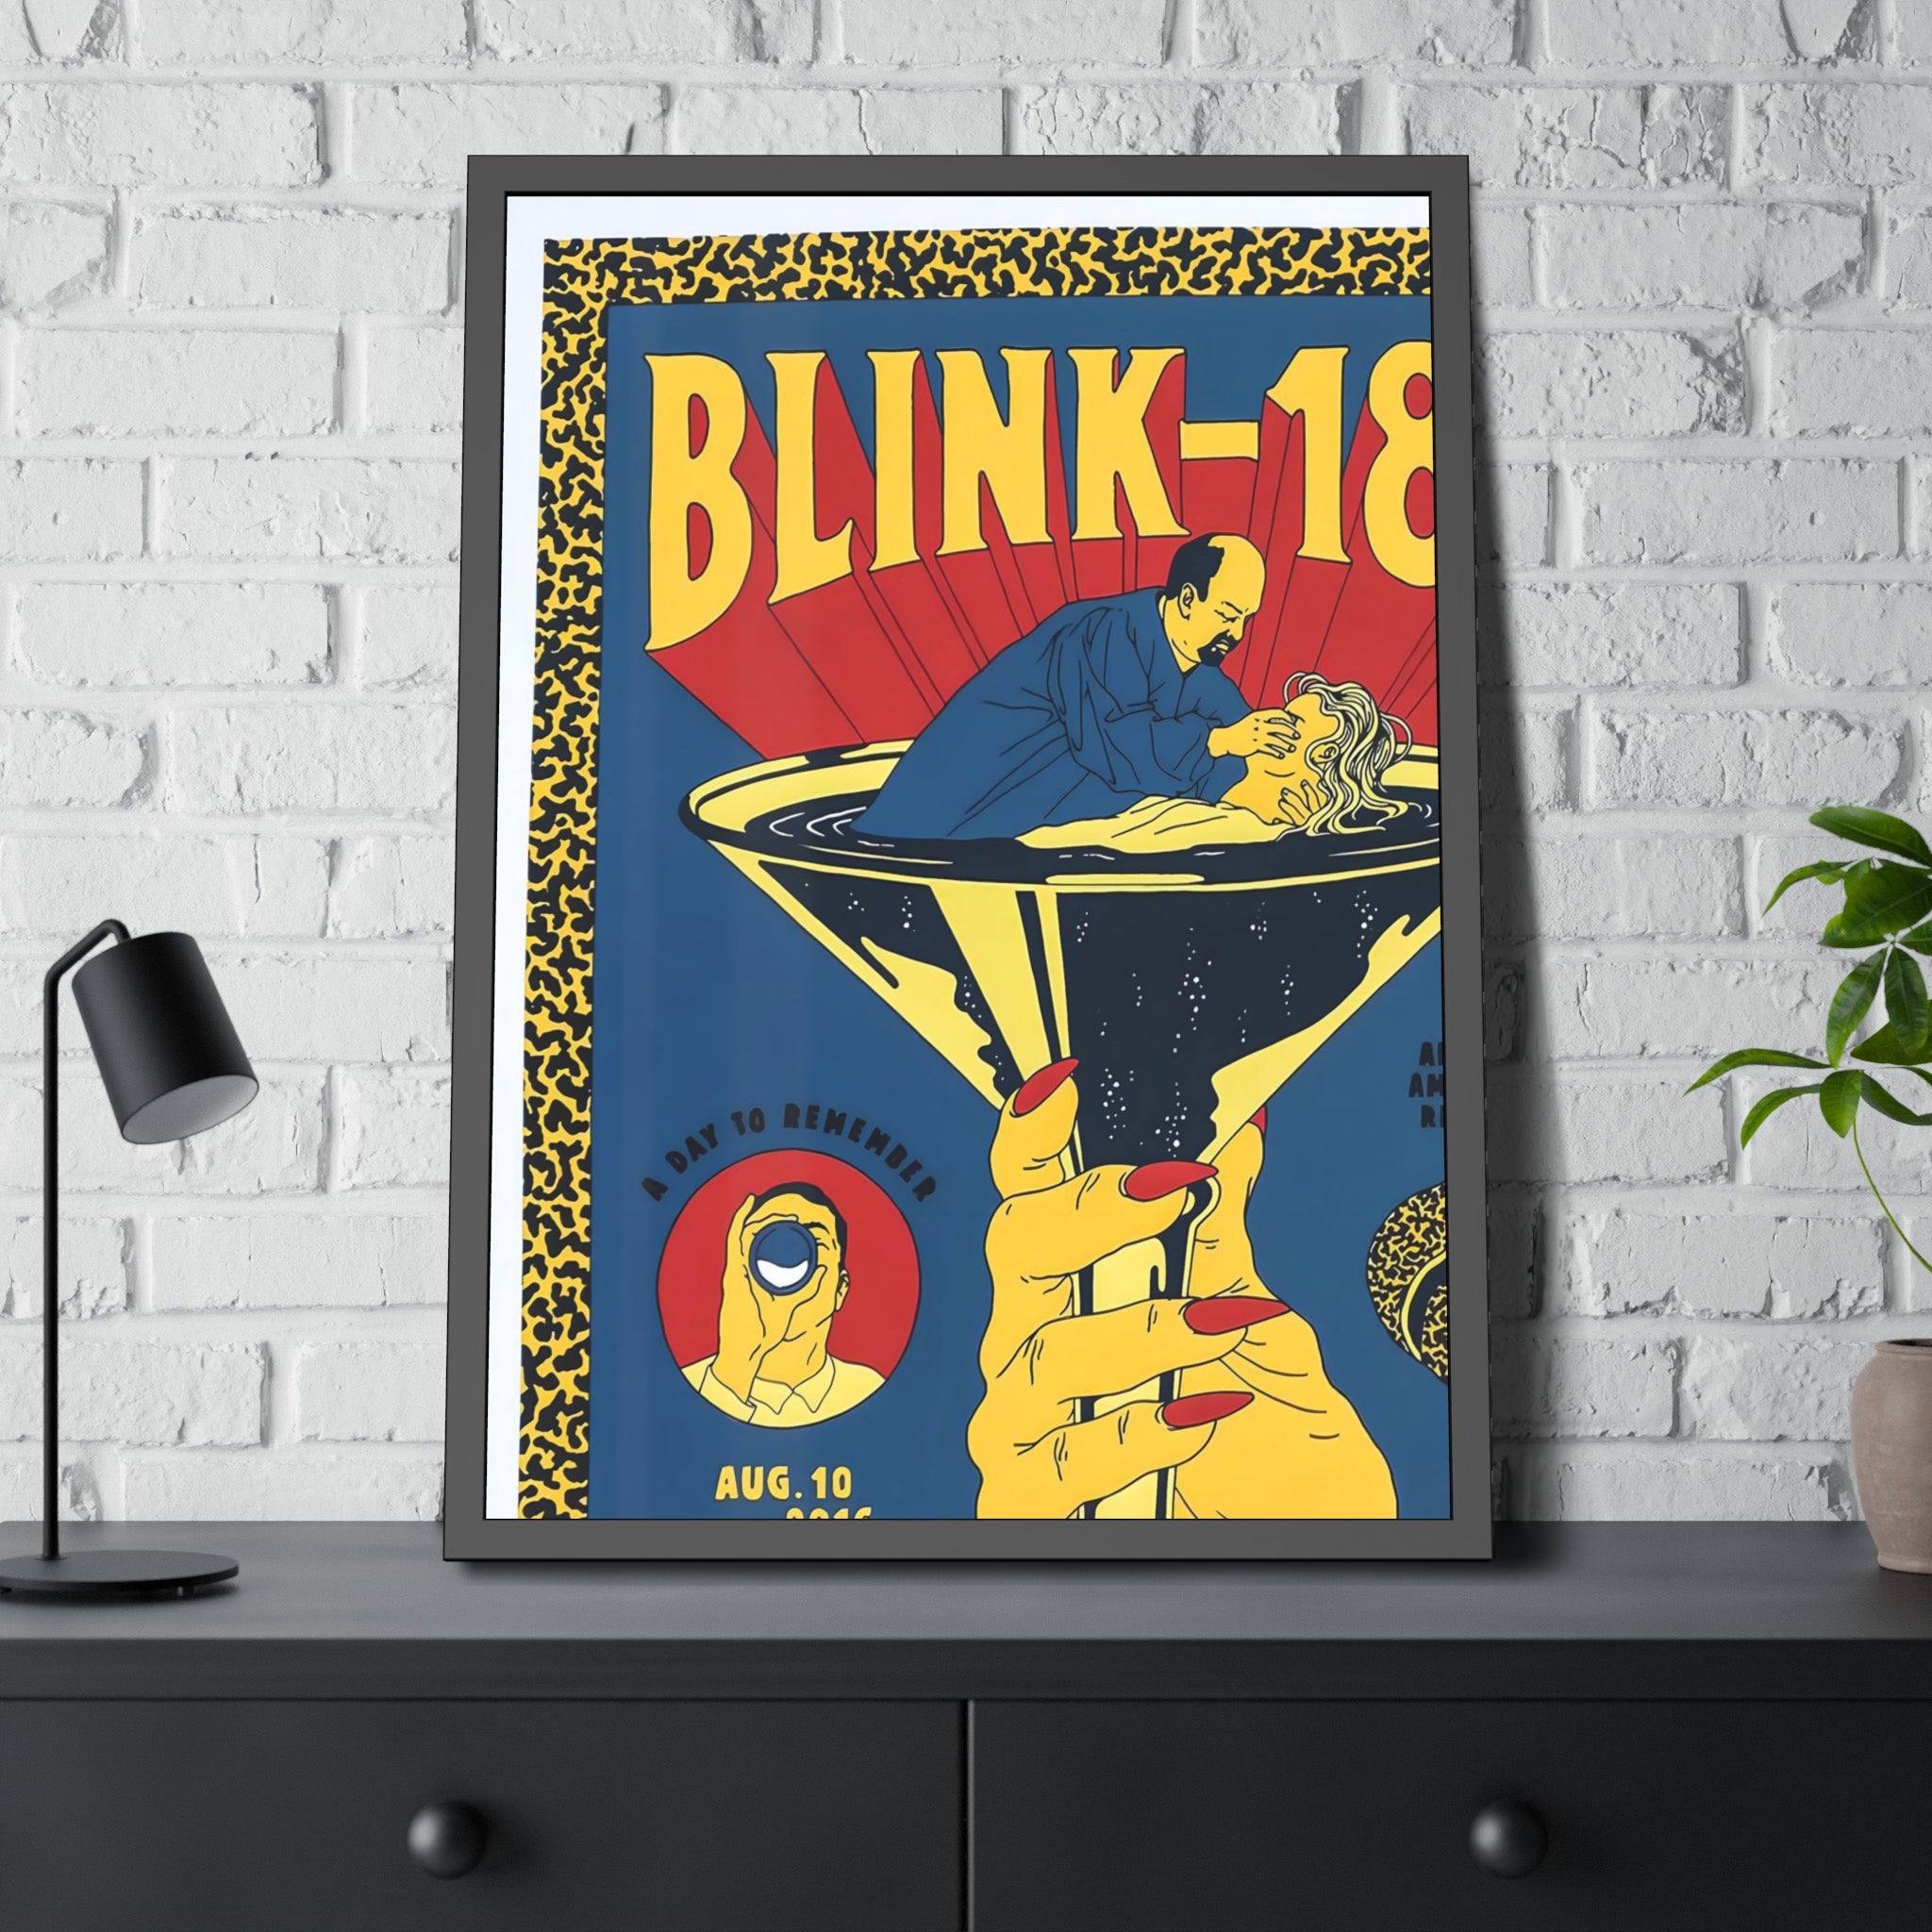 Blink-182 Concert Poster